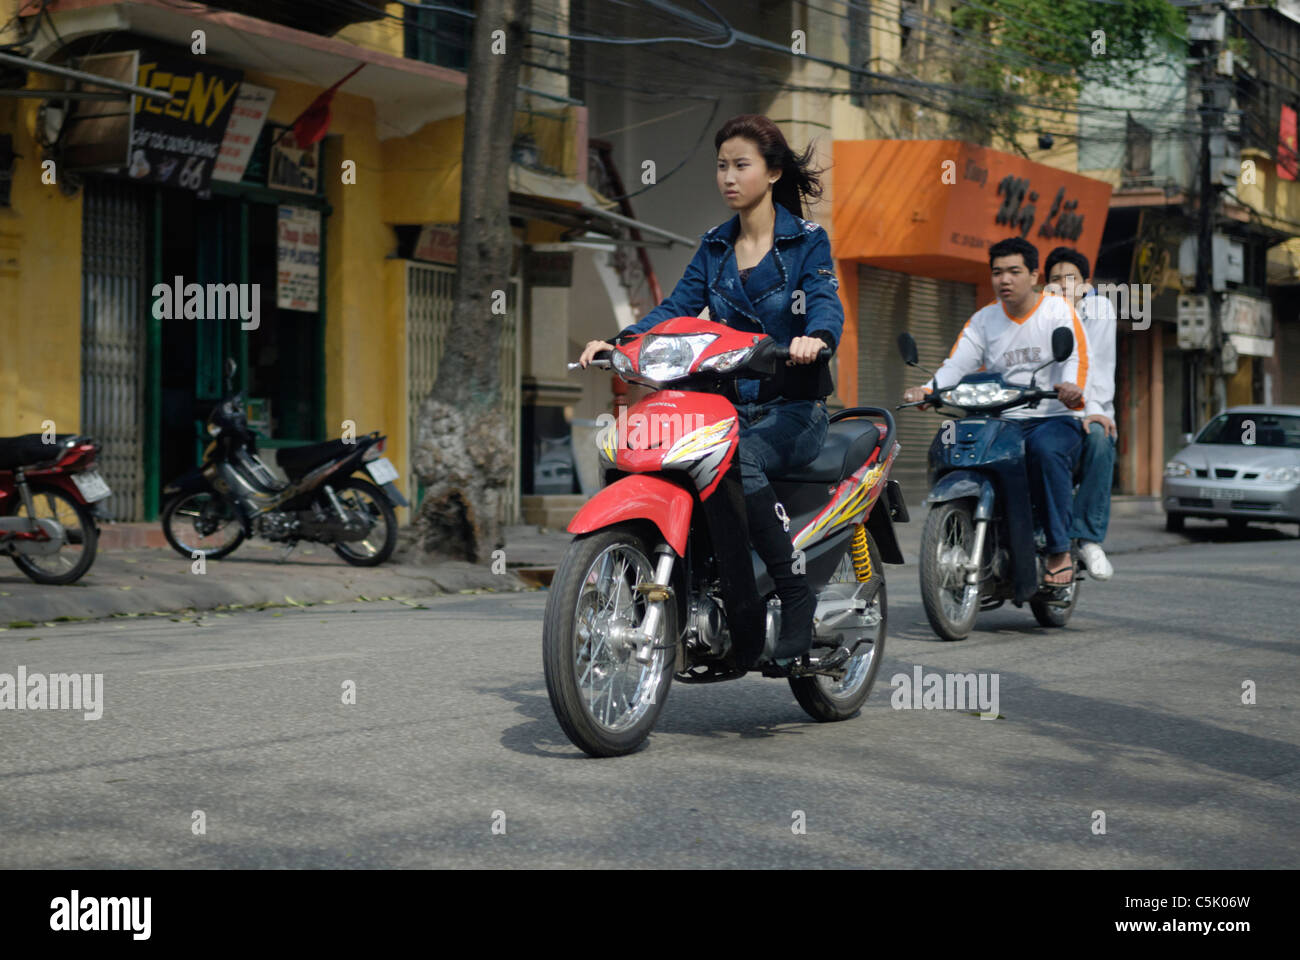 Asia, Vietnam, Hanoi. Hanoi old quarter. Young vietnamese woman riding a small motorbike through Hanoi. Stock Photo